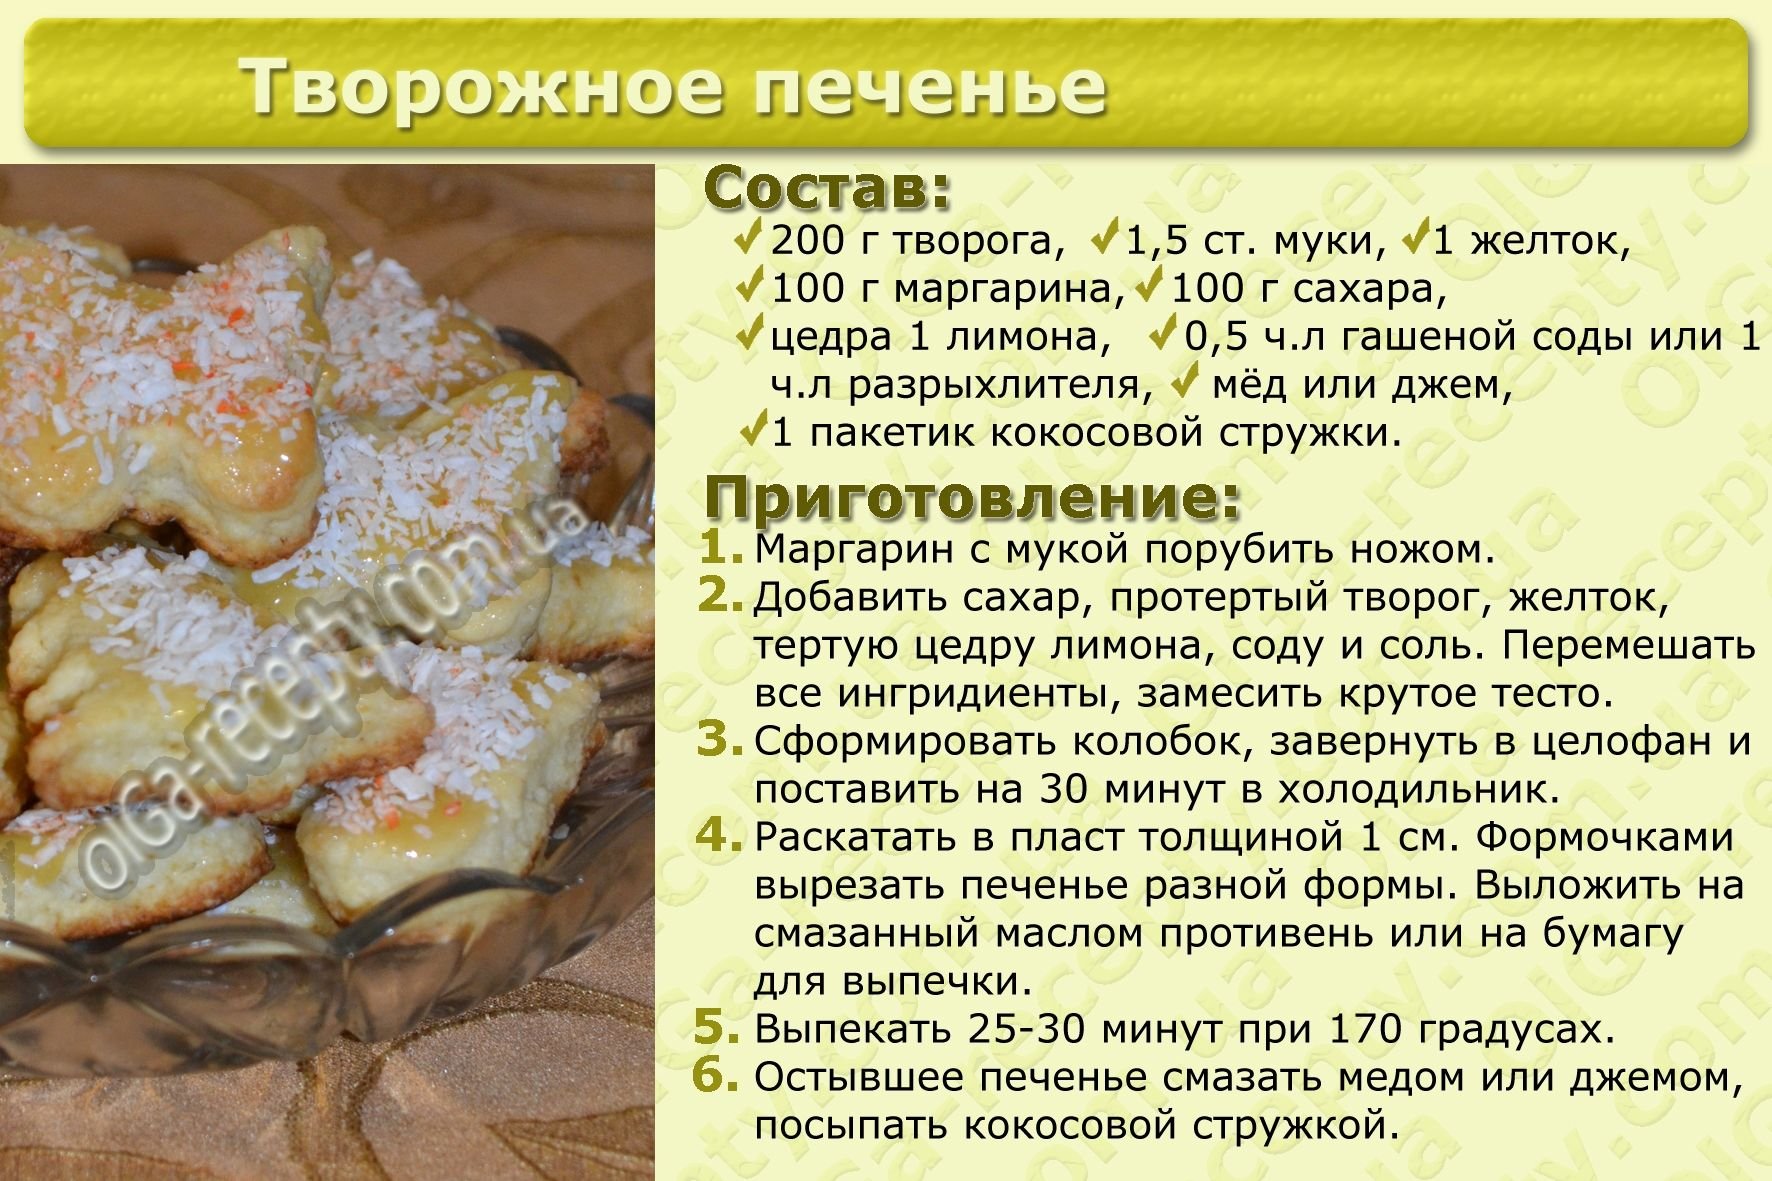 Рецепт песочного печенья в домашних условиях духовке